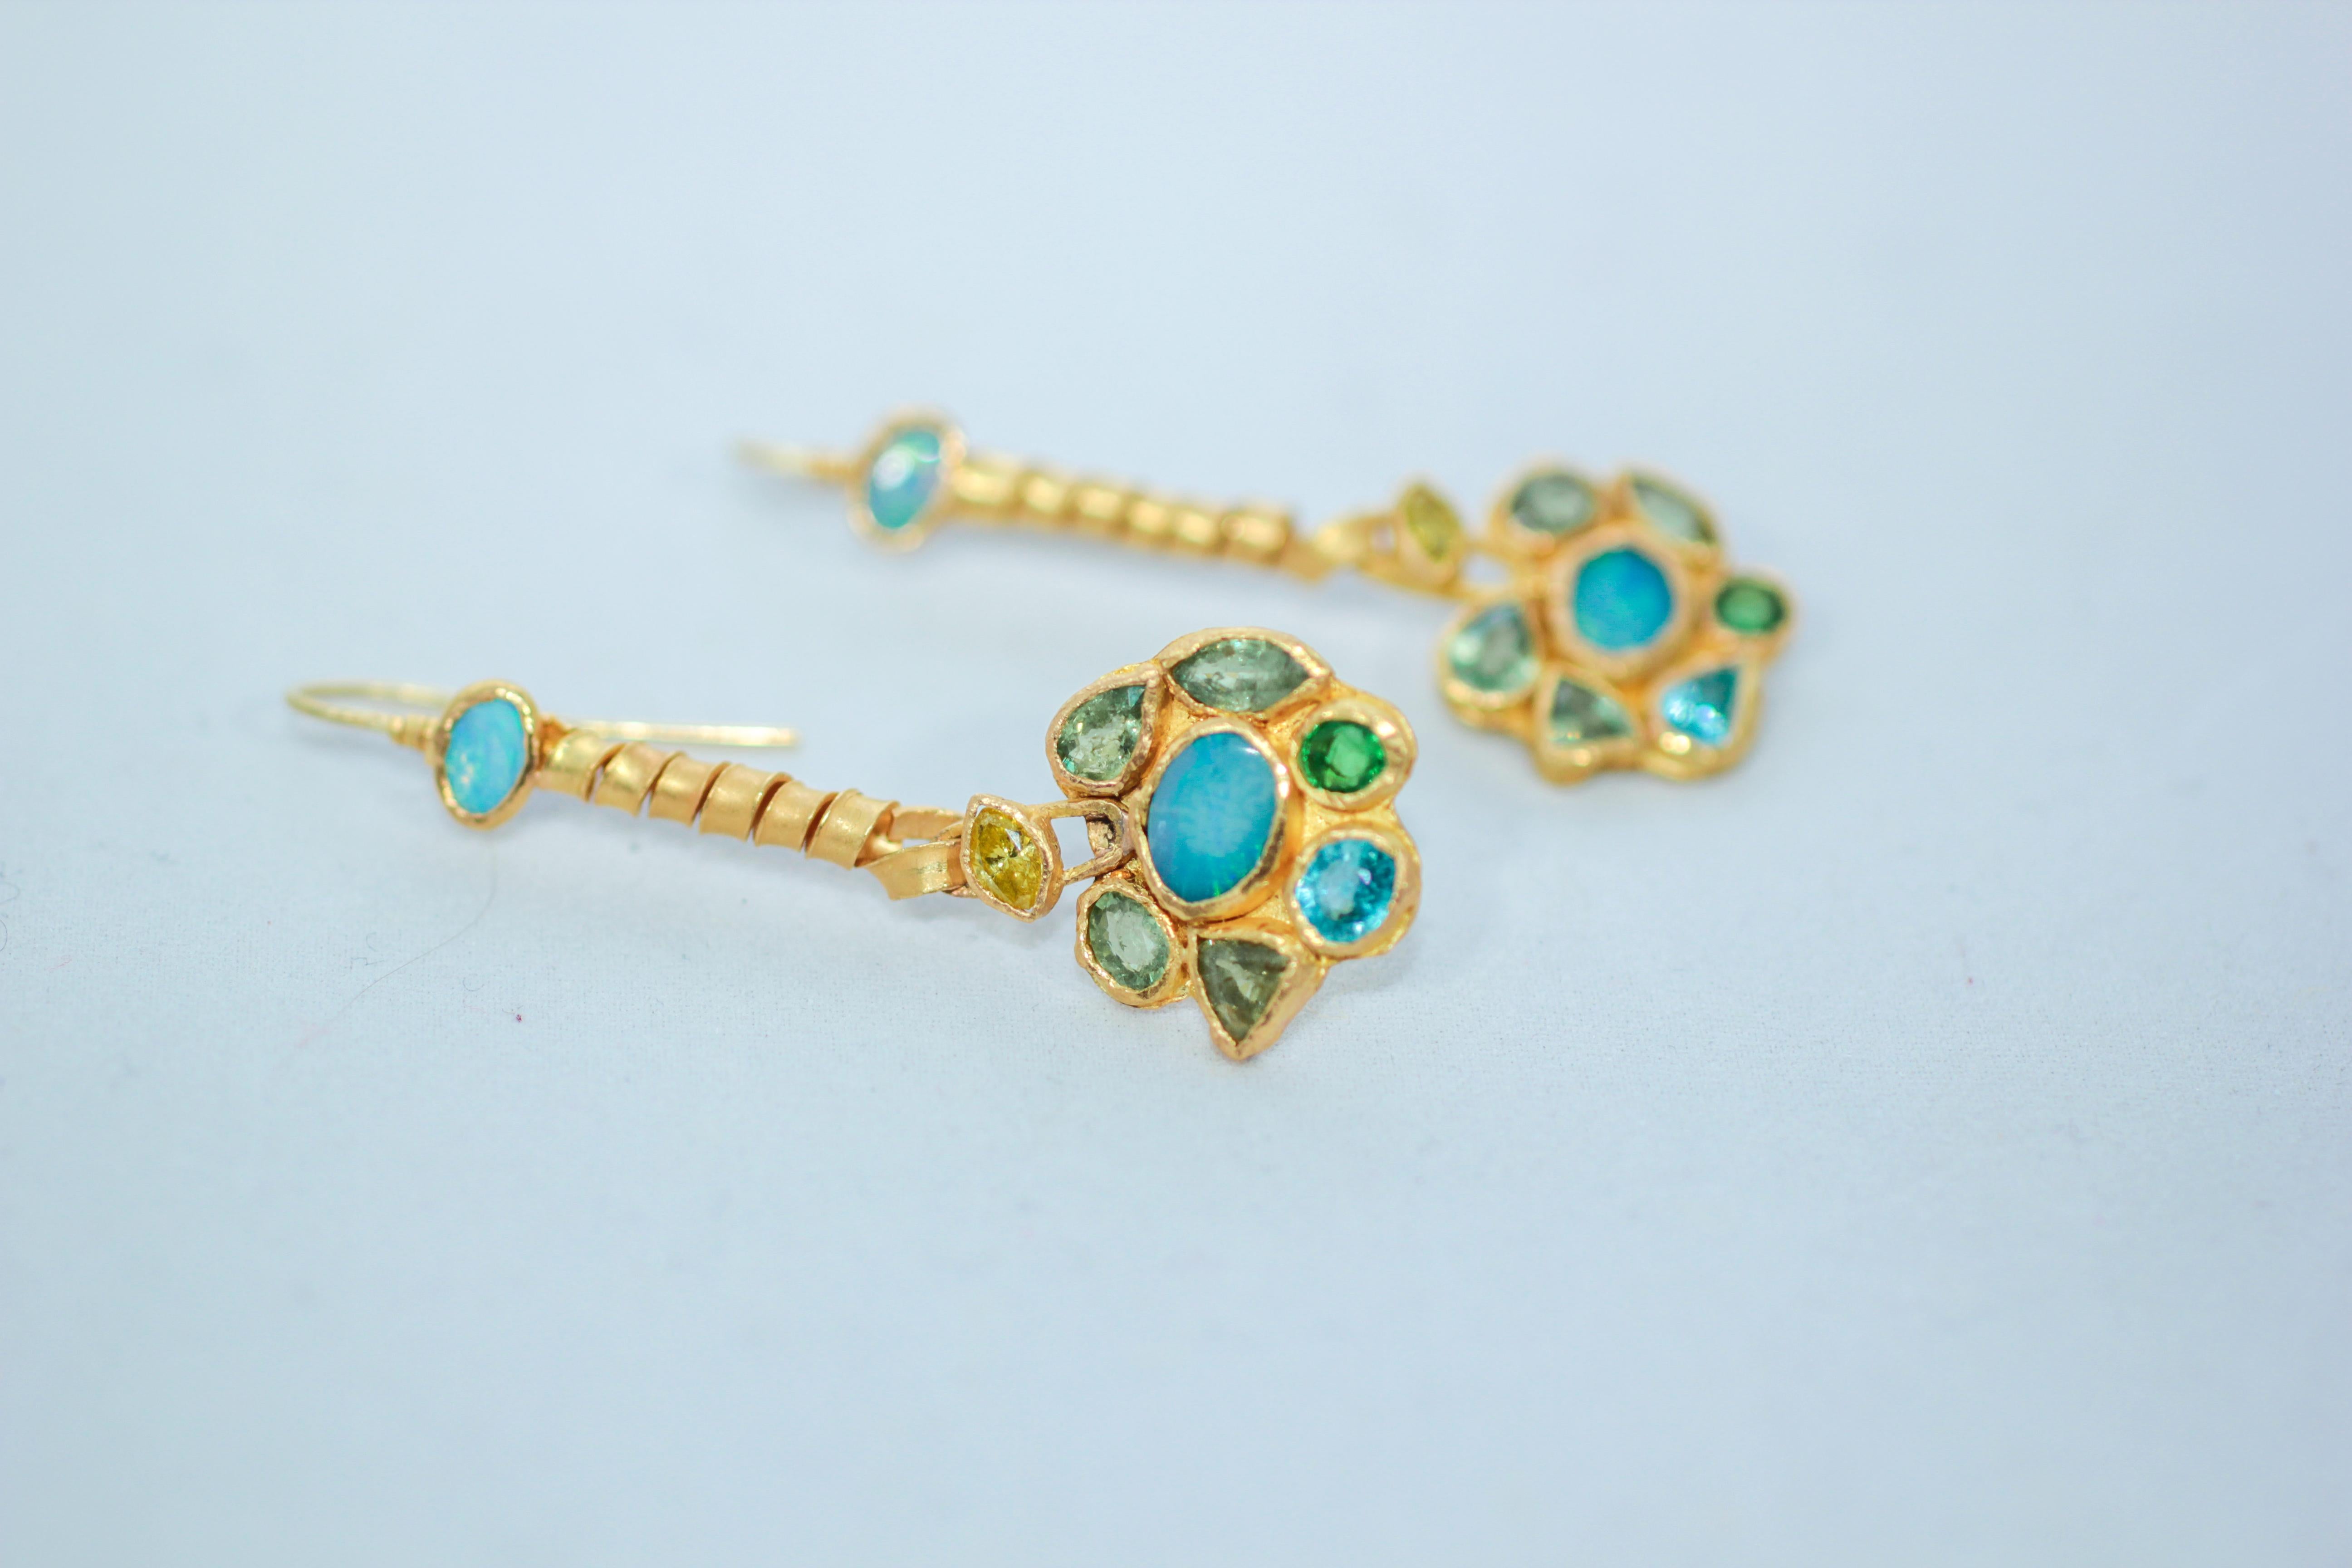 Boucles d'oreilles pendantes en forme de fleurs de myosotis. Opales, diamants jaunes, grenats démantoïdes, zircons sont sertis en or 21K. Unique en son genre, fait à la main. Magnifique éclat et couleurs intenses bleu-vert-jaune. Féminines et